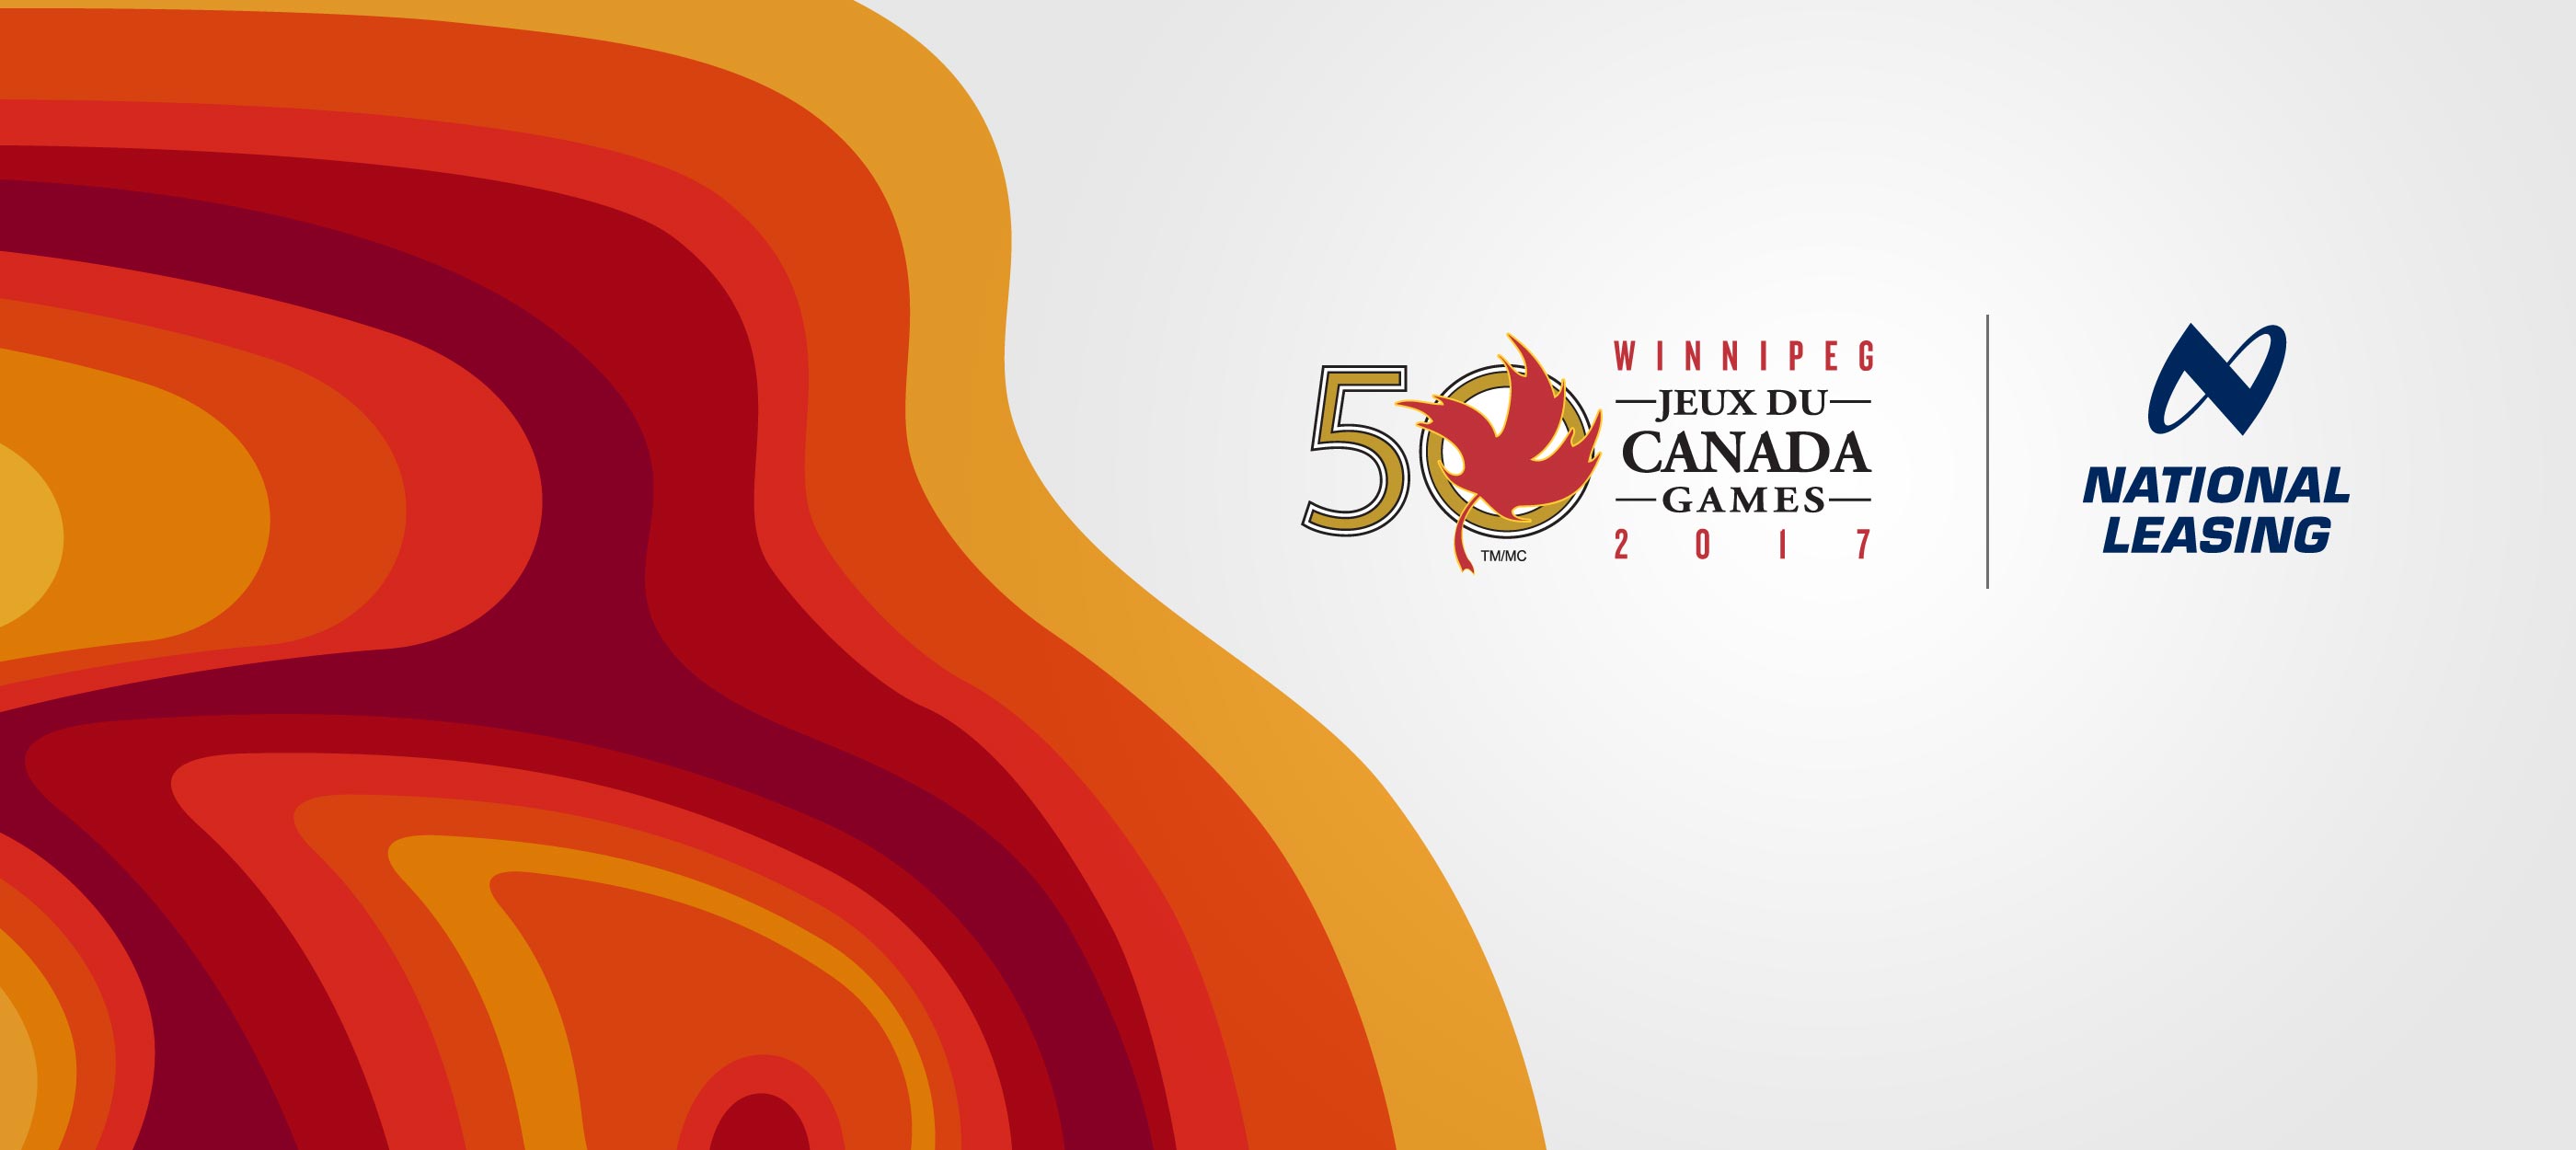 Logo des Jeux du Canada et logo de CWB National Leasing